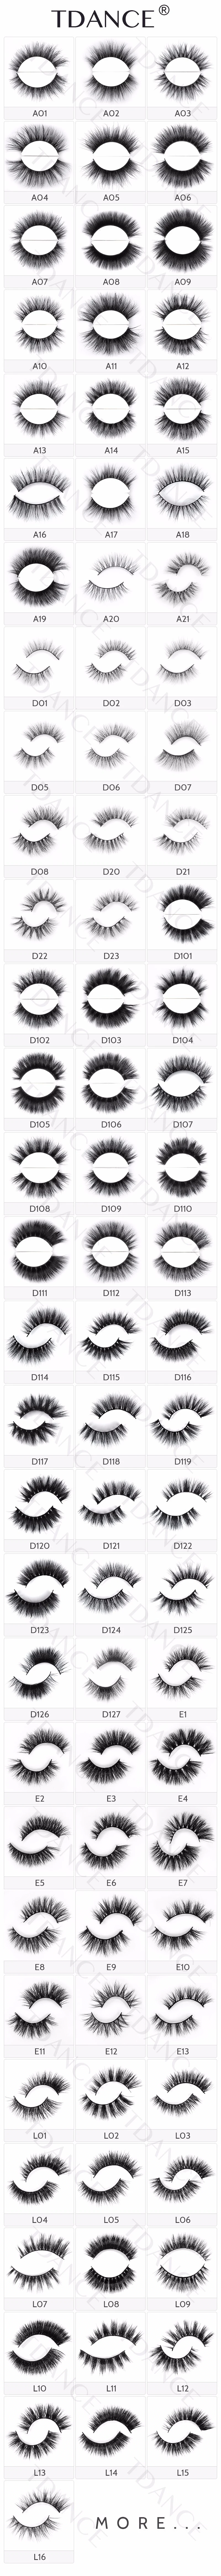 OEM Mink Eyelashes Design Boxes Create Your Own Brand Eyelashes